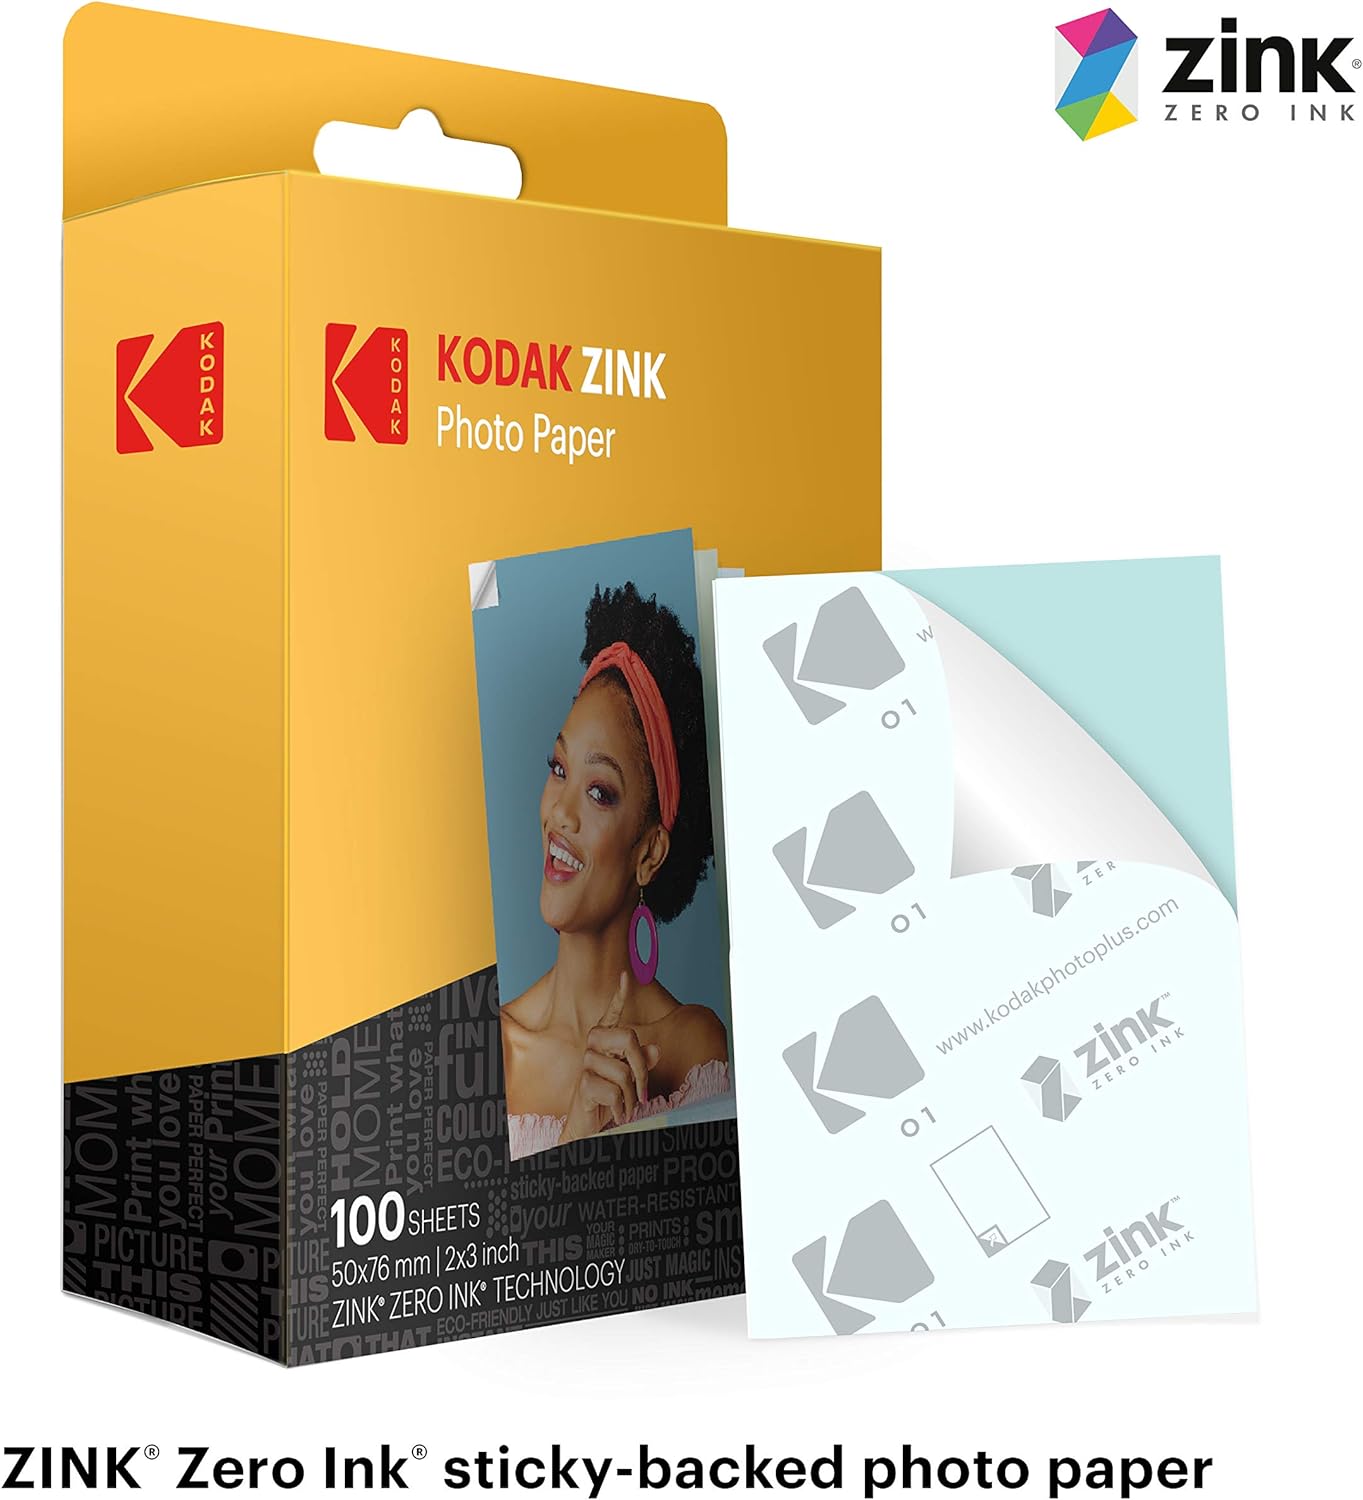 Papier photo Zink original Kodak 2x3 Premium, compatible avec les